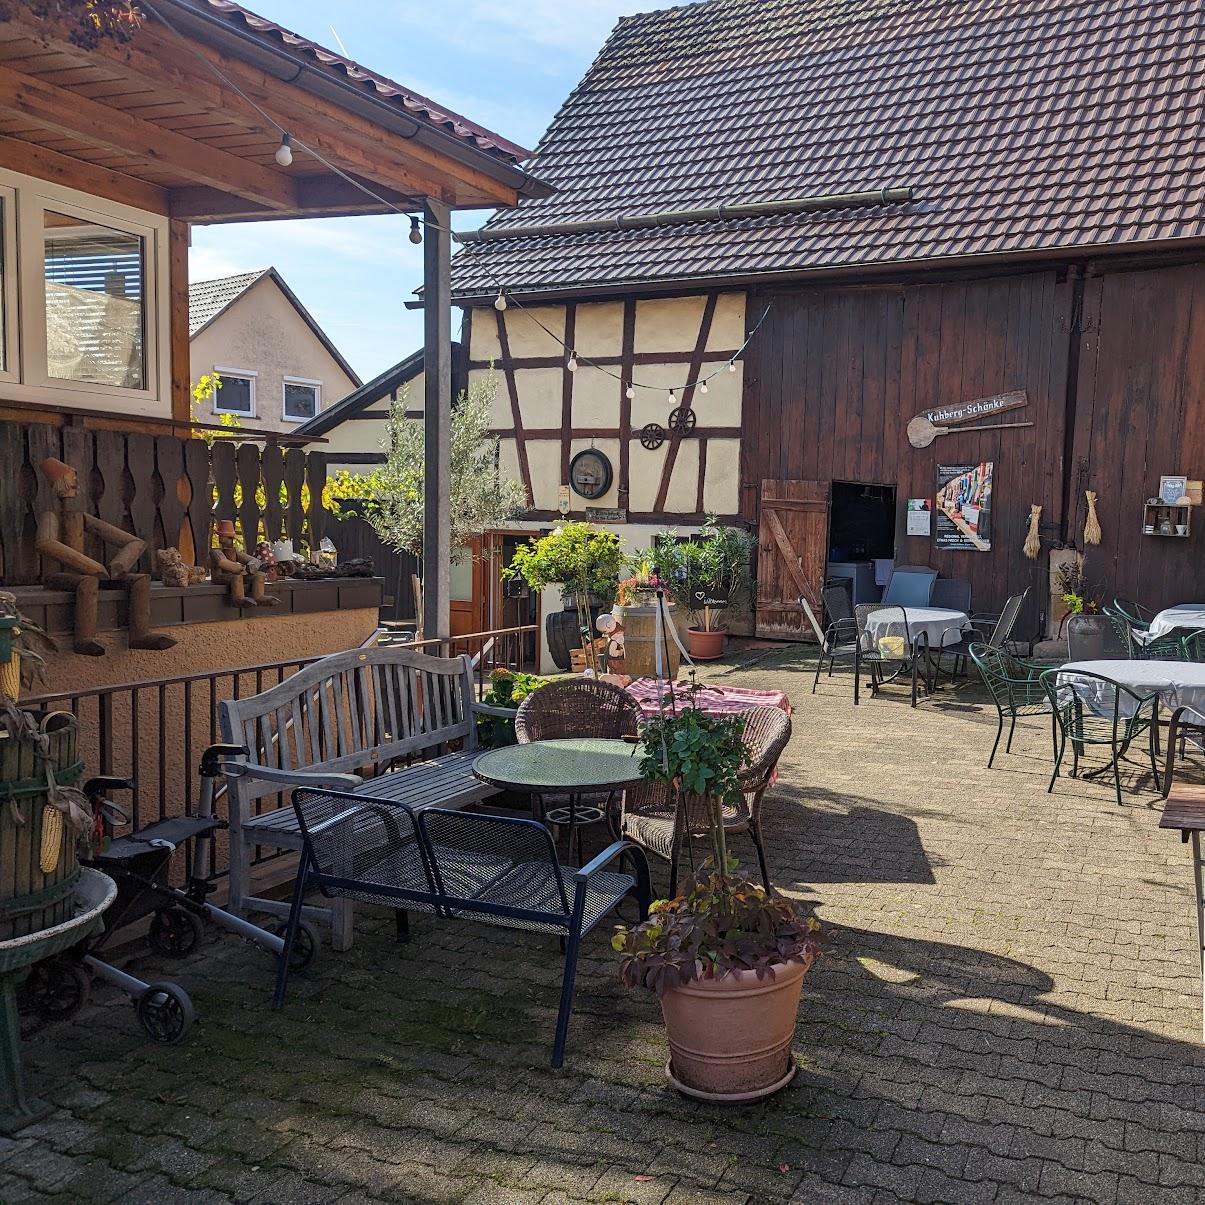 Restaurant "Kuhberg Schänke Inh. Alexander Mühlbeyer" in Gundelsheim